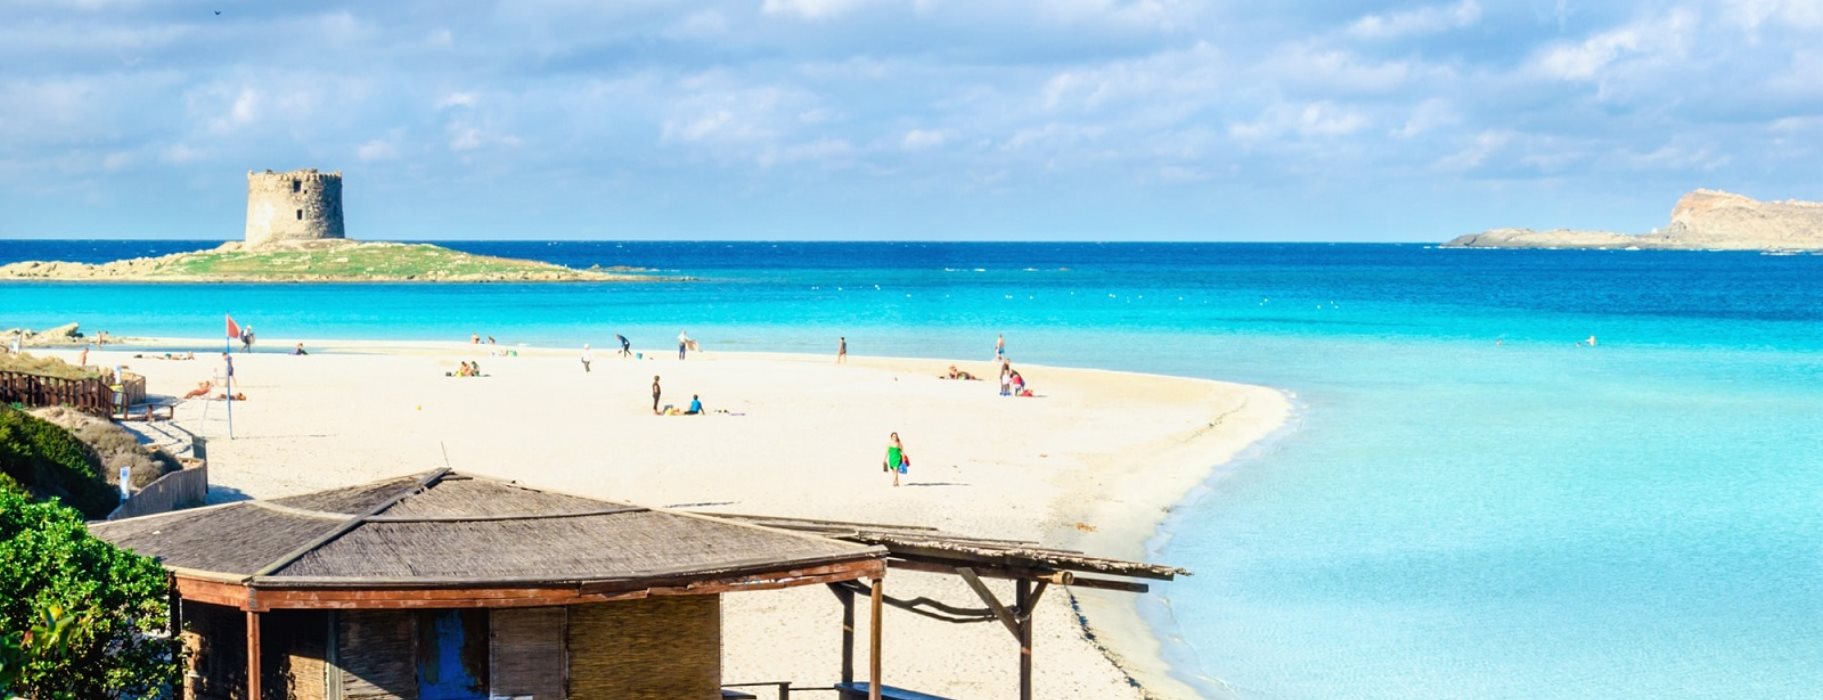 Μην πάρετε ποτέ άμμο από παραλία στη Σαρδηνία – Δείτε τι έπαθαν τουρίστες